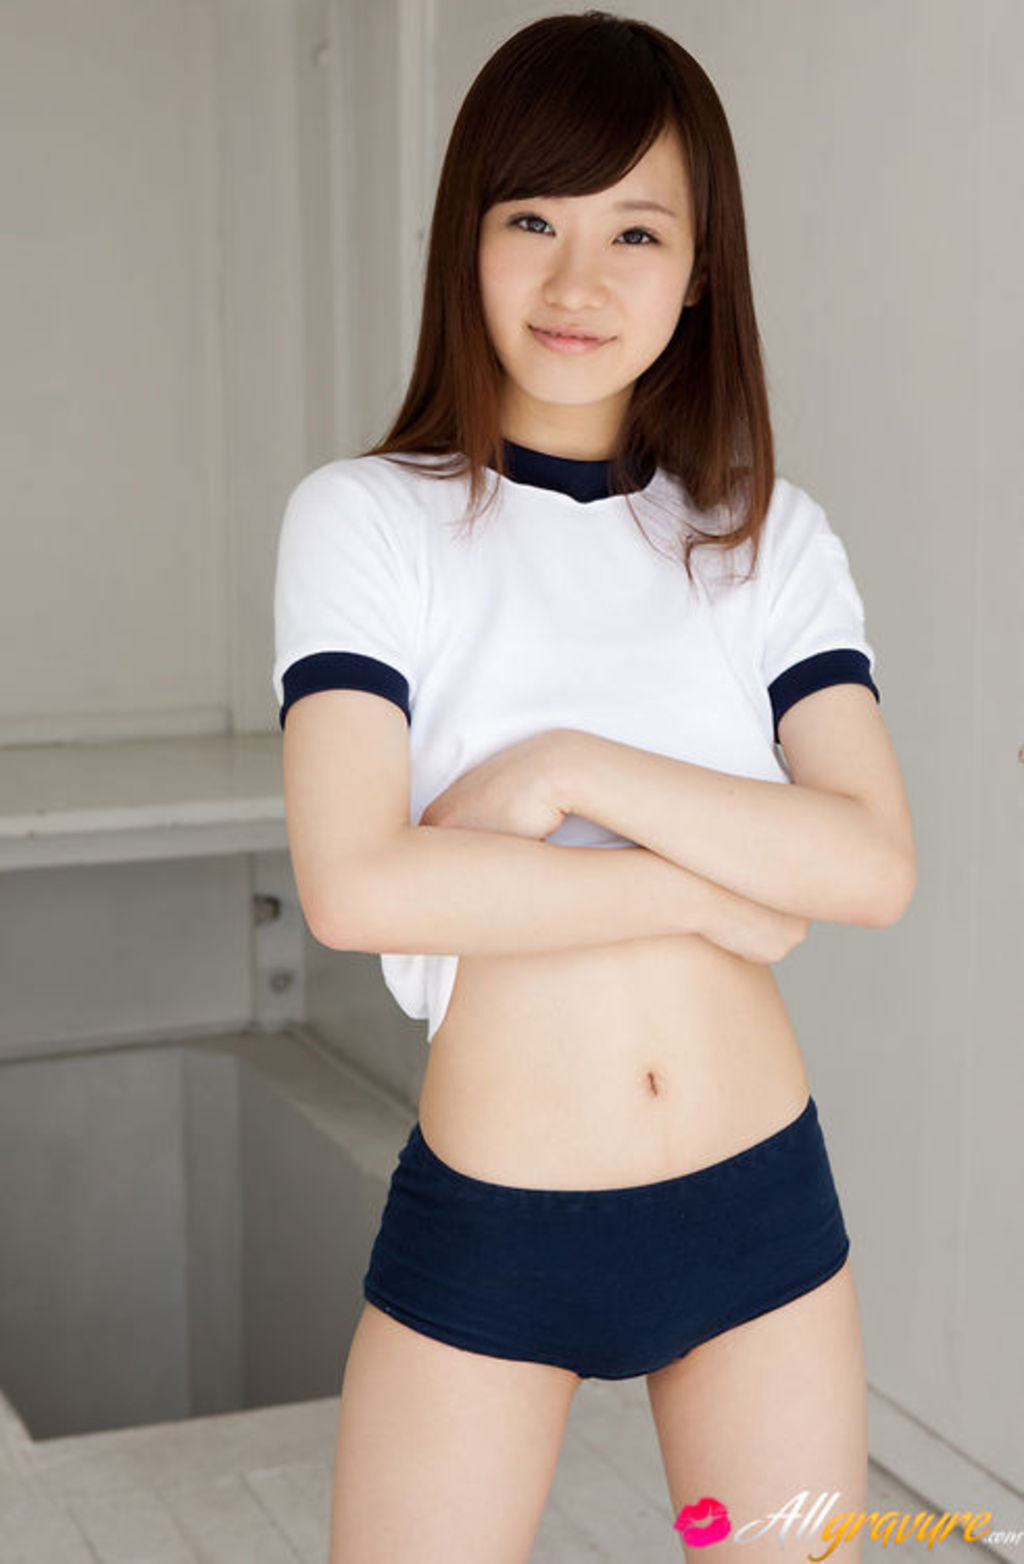 Sexy Japanese Teen Girl Kana Yuuki - AllGravure Sexy Teen Girls 3  14 |  BabeImpact.com